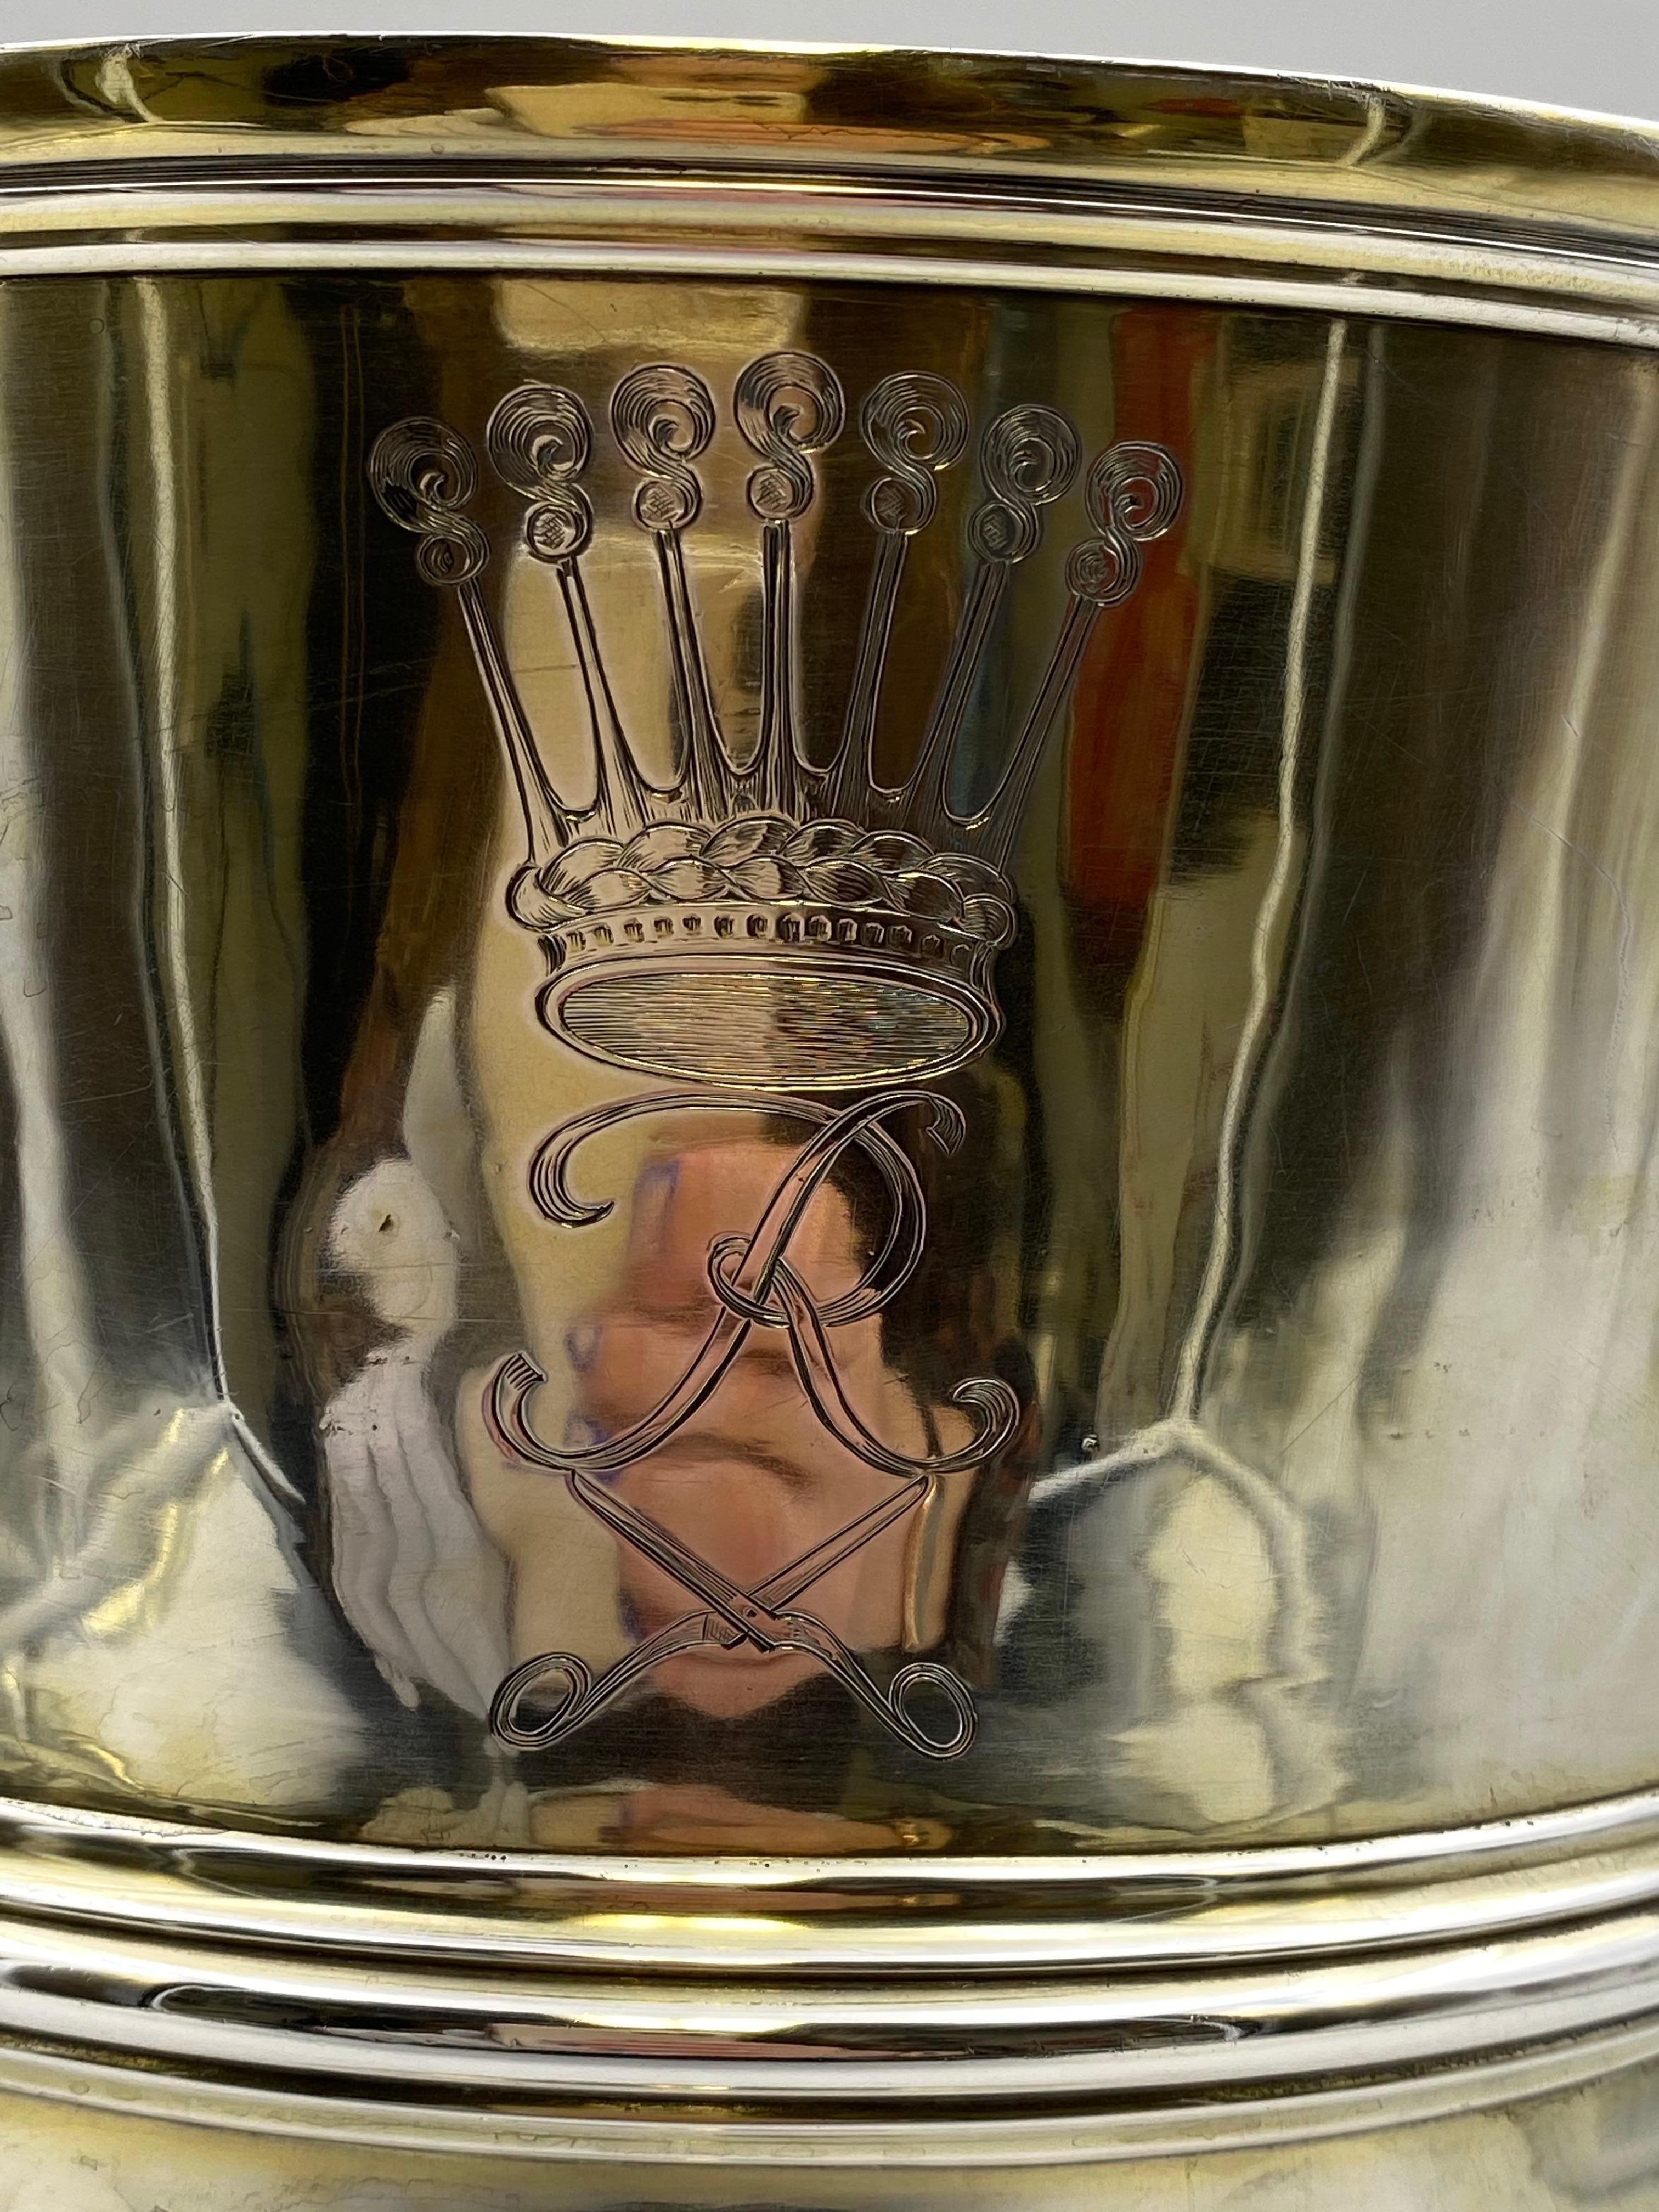 Coupe trophée à deux anses en argent sterling partiellement doré par l'orfèvre écossais Wilson & Sharp, basé à Édimbourg, qui exploitait un magasin d'articles de luxe depuis le début du XIXe siècle. Ce trophée exquis porte une inscription